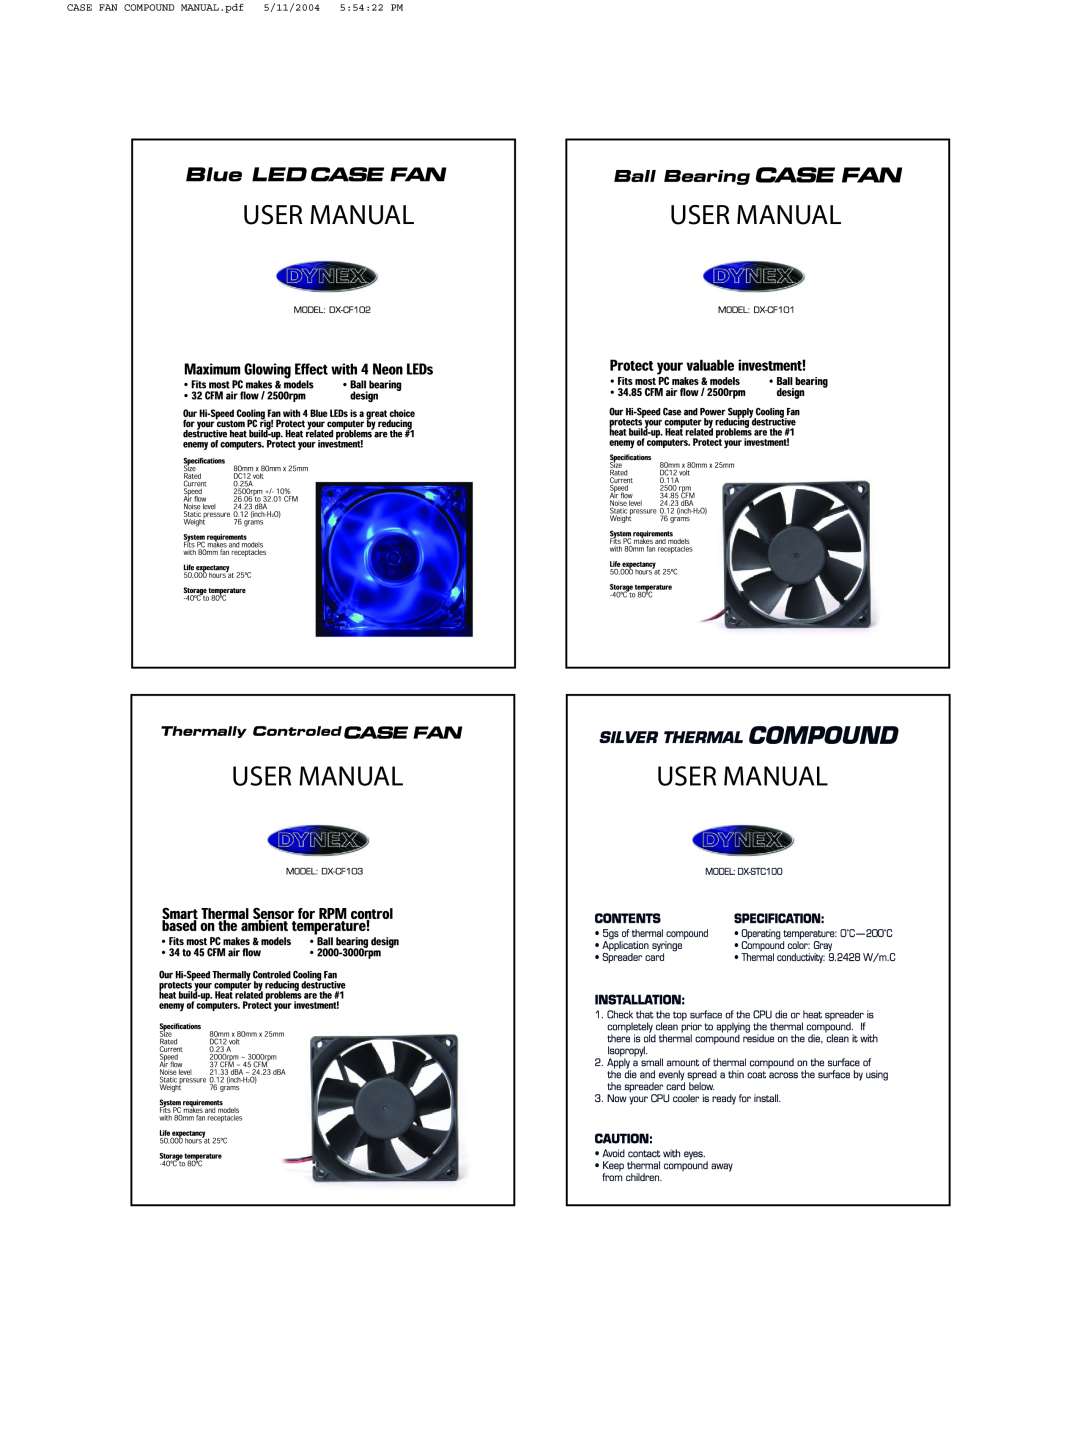 Dynex DX-CF102 3.125, DX-CF103, DX-CF101 user manual User Manual, CASE FAN COMPOUND MANUAL.pdf, 5/11/2004, 55422 PM 